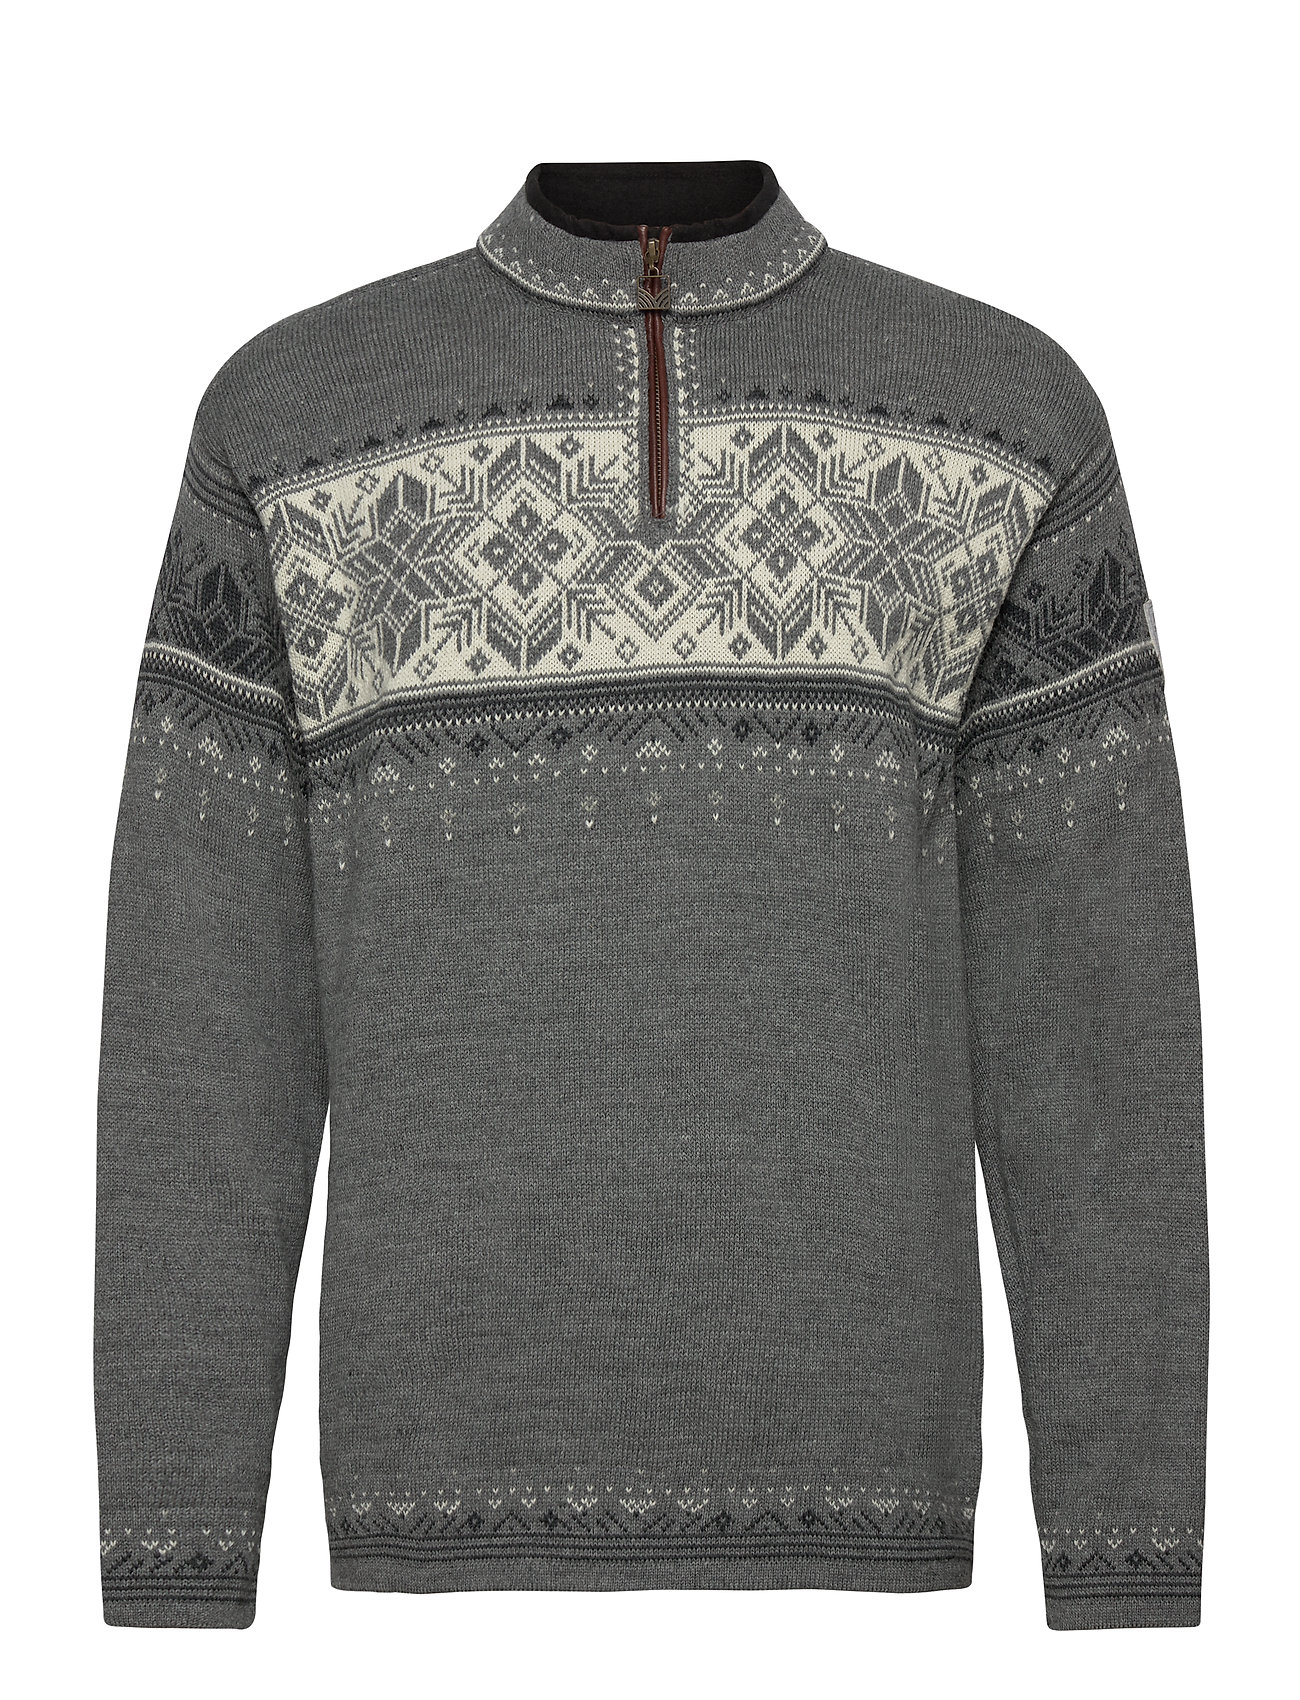 Blyfjell Sweater Knitwear Half Zip Pullover Grå Dale Of Norway